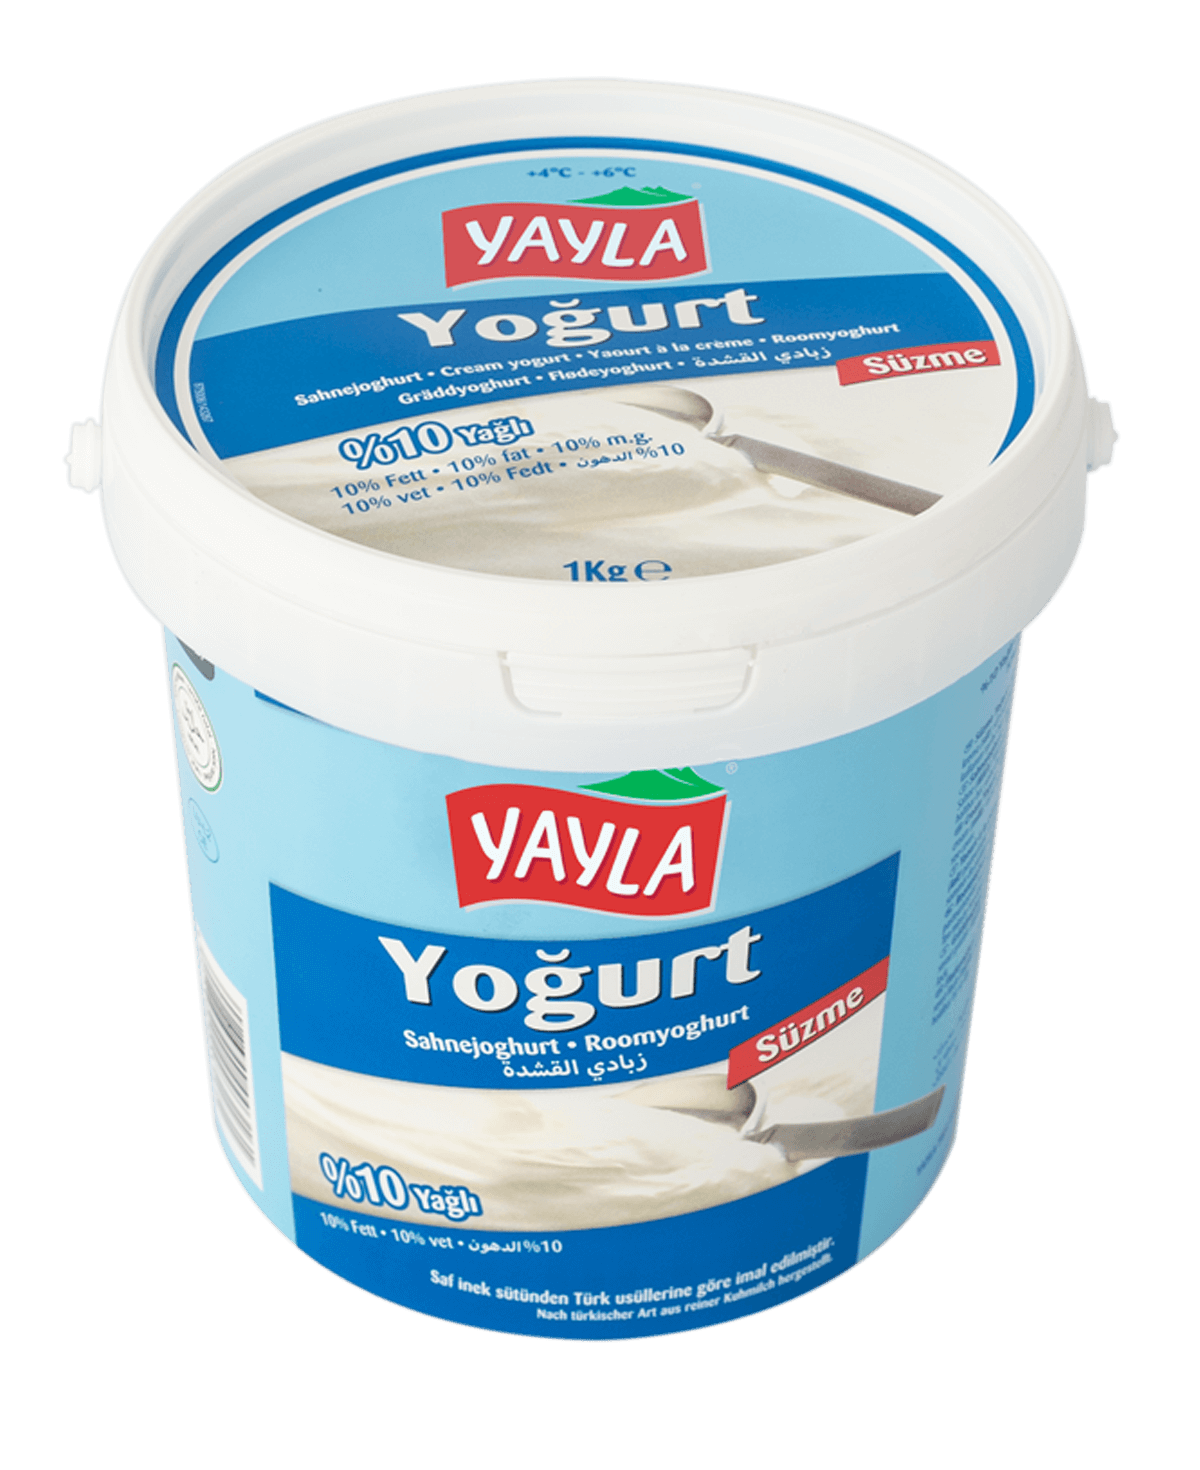 Yayla Süzme Yogurt / Sahne-Joghurt 10% 1kg